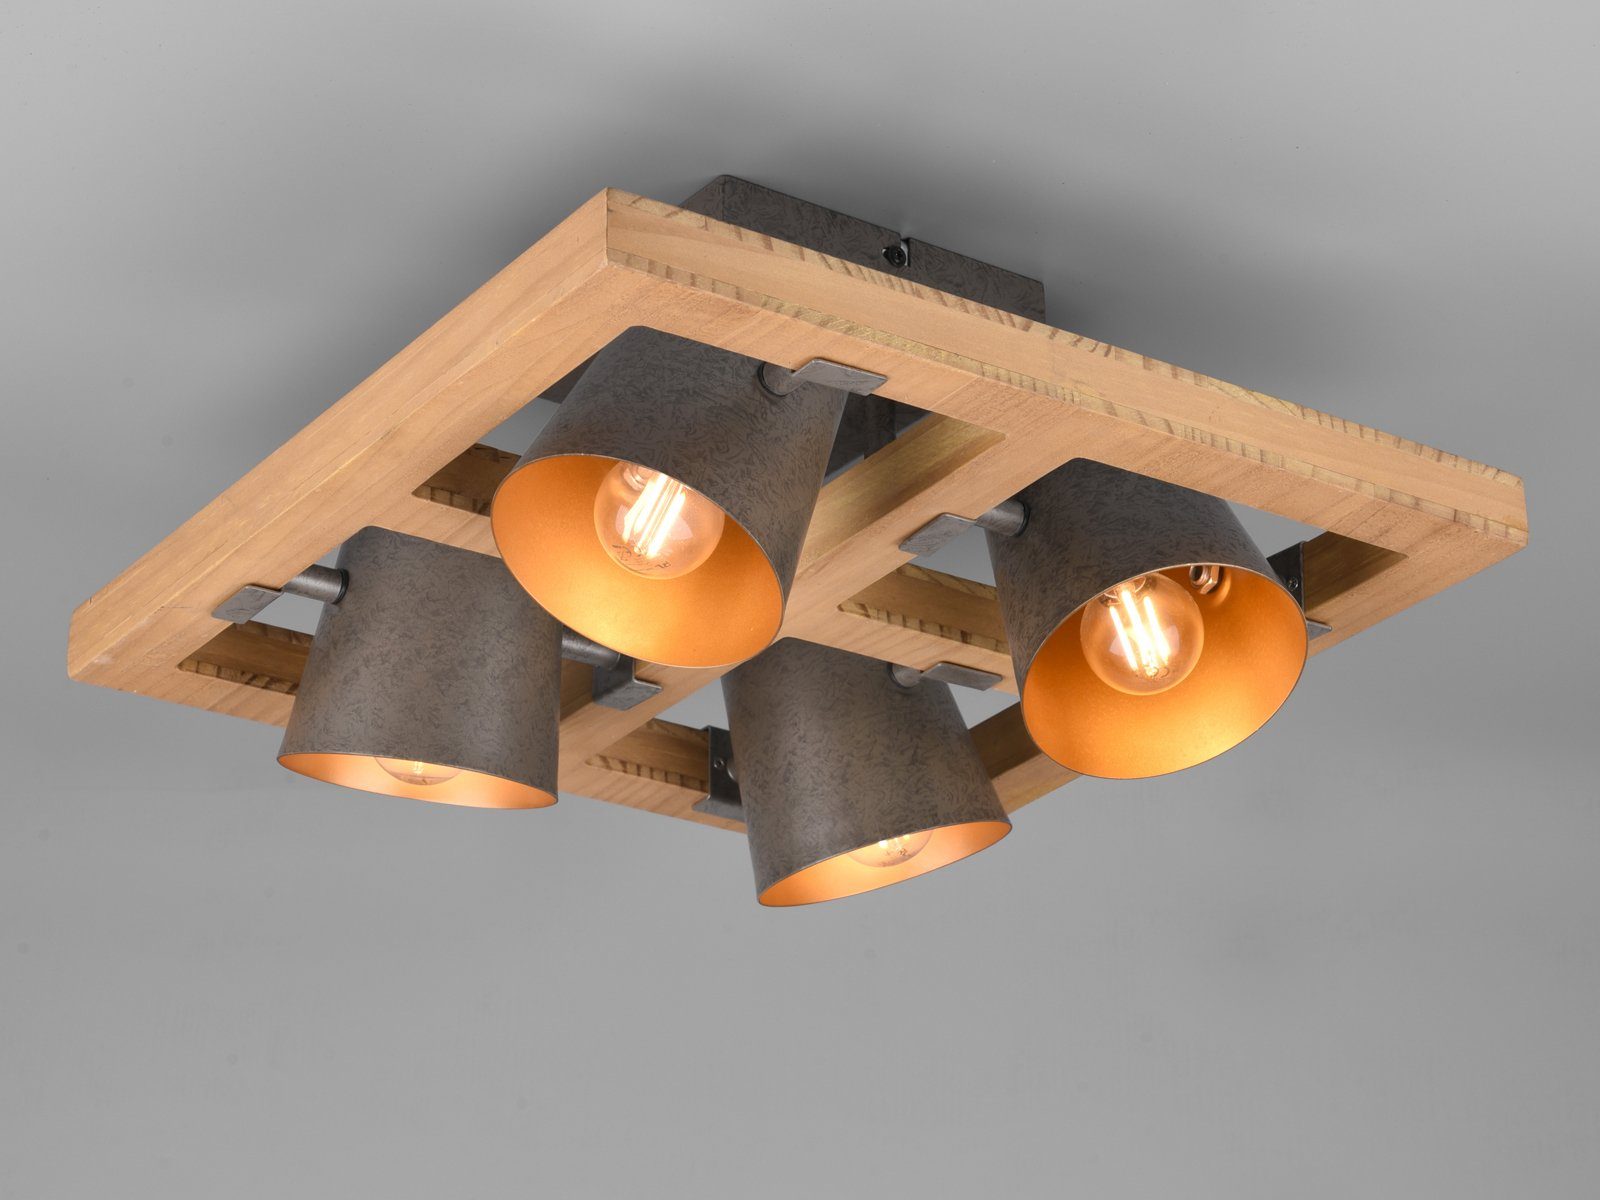 LED Warmweiß, Industriedesign LED Ø39cm meineWunschleuchte ausgefallene Holz-lampe Decke-nleuchten wechselbar, Dimmfunktion, gold-en, Deckenstrahler,